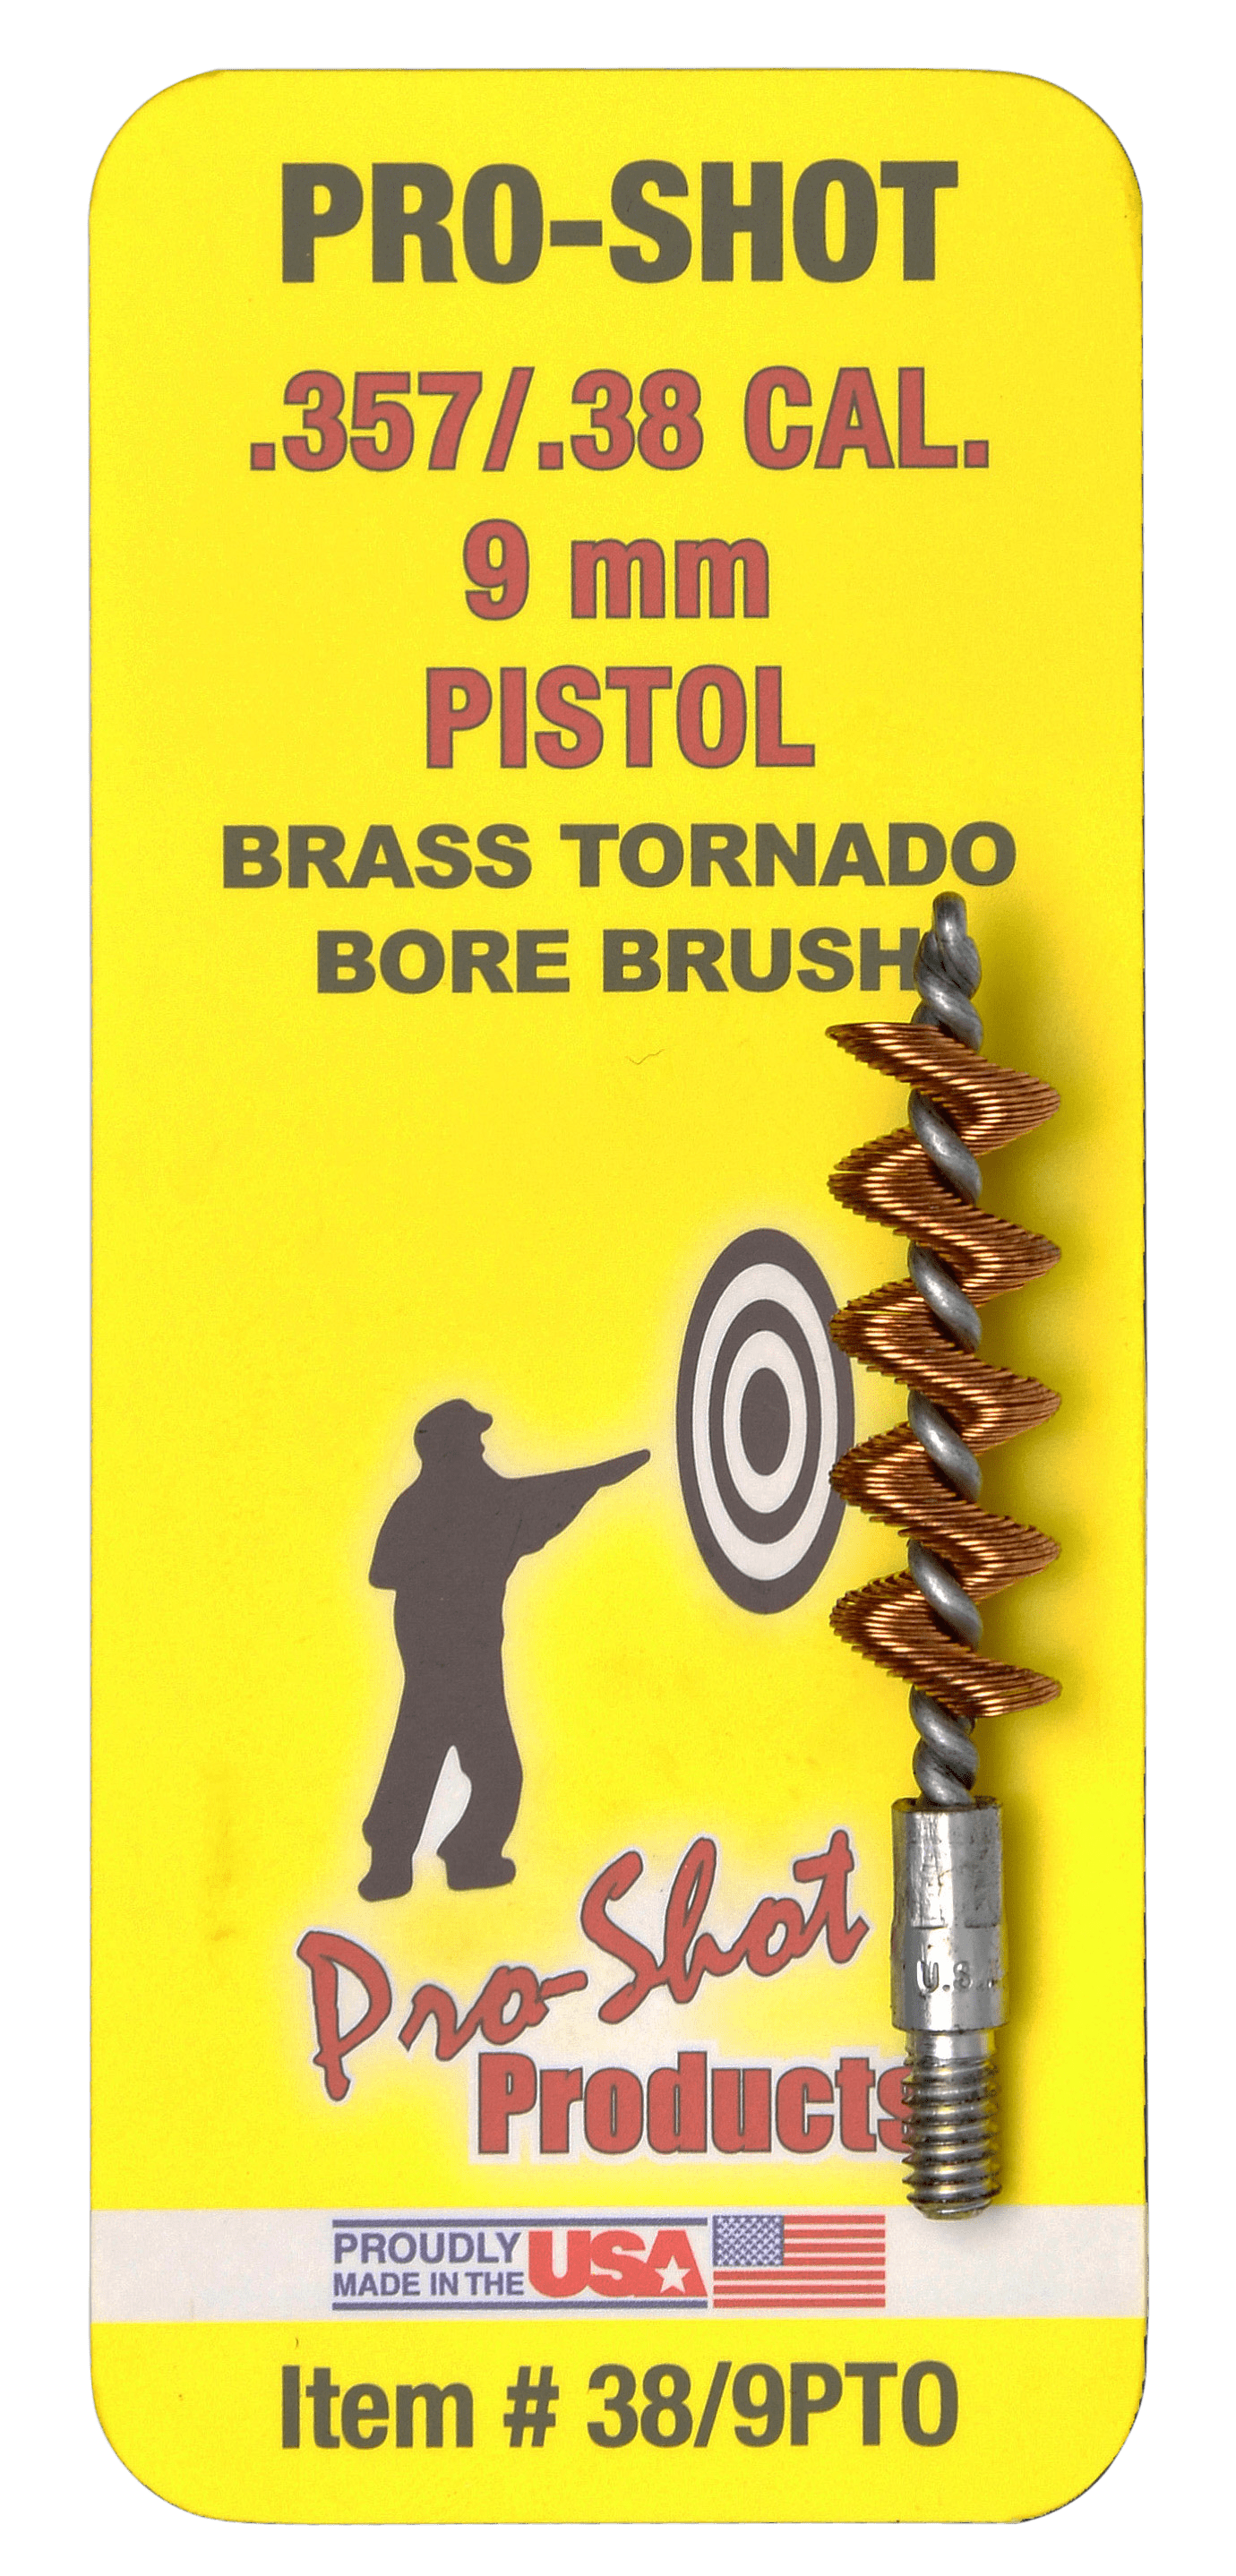 Pro-Shot Pro-shot Tornado, Proshot 38/9pto   38/9mm Pstl Tornado Bore Brush Gun Care